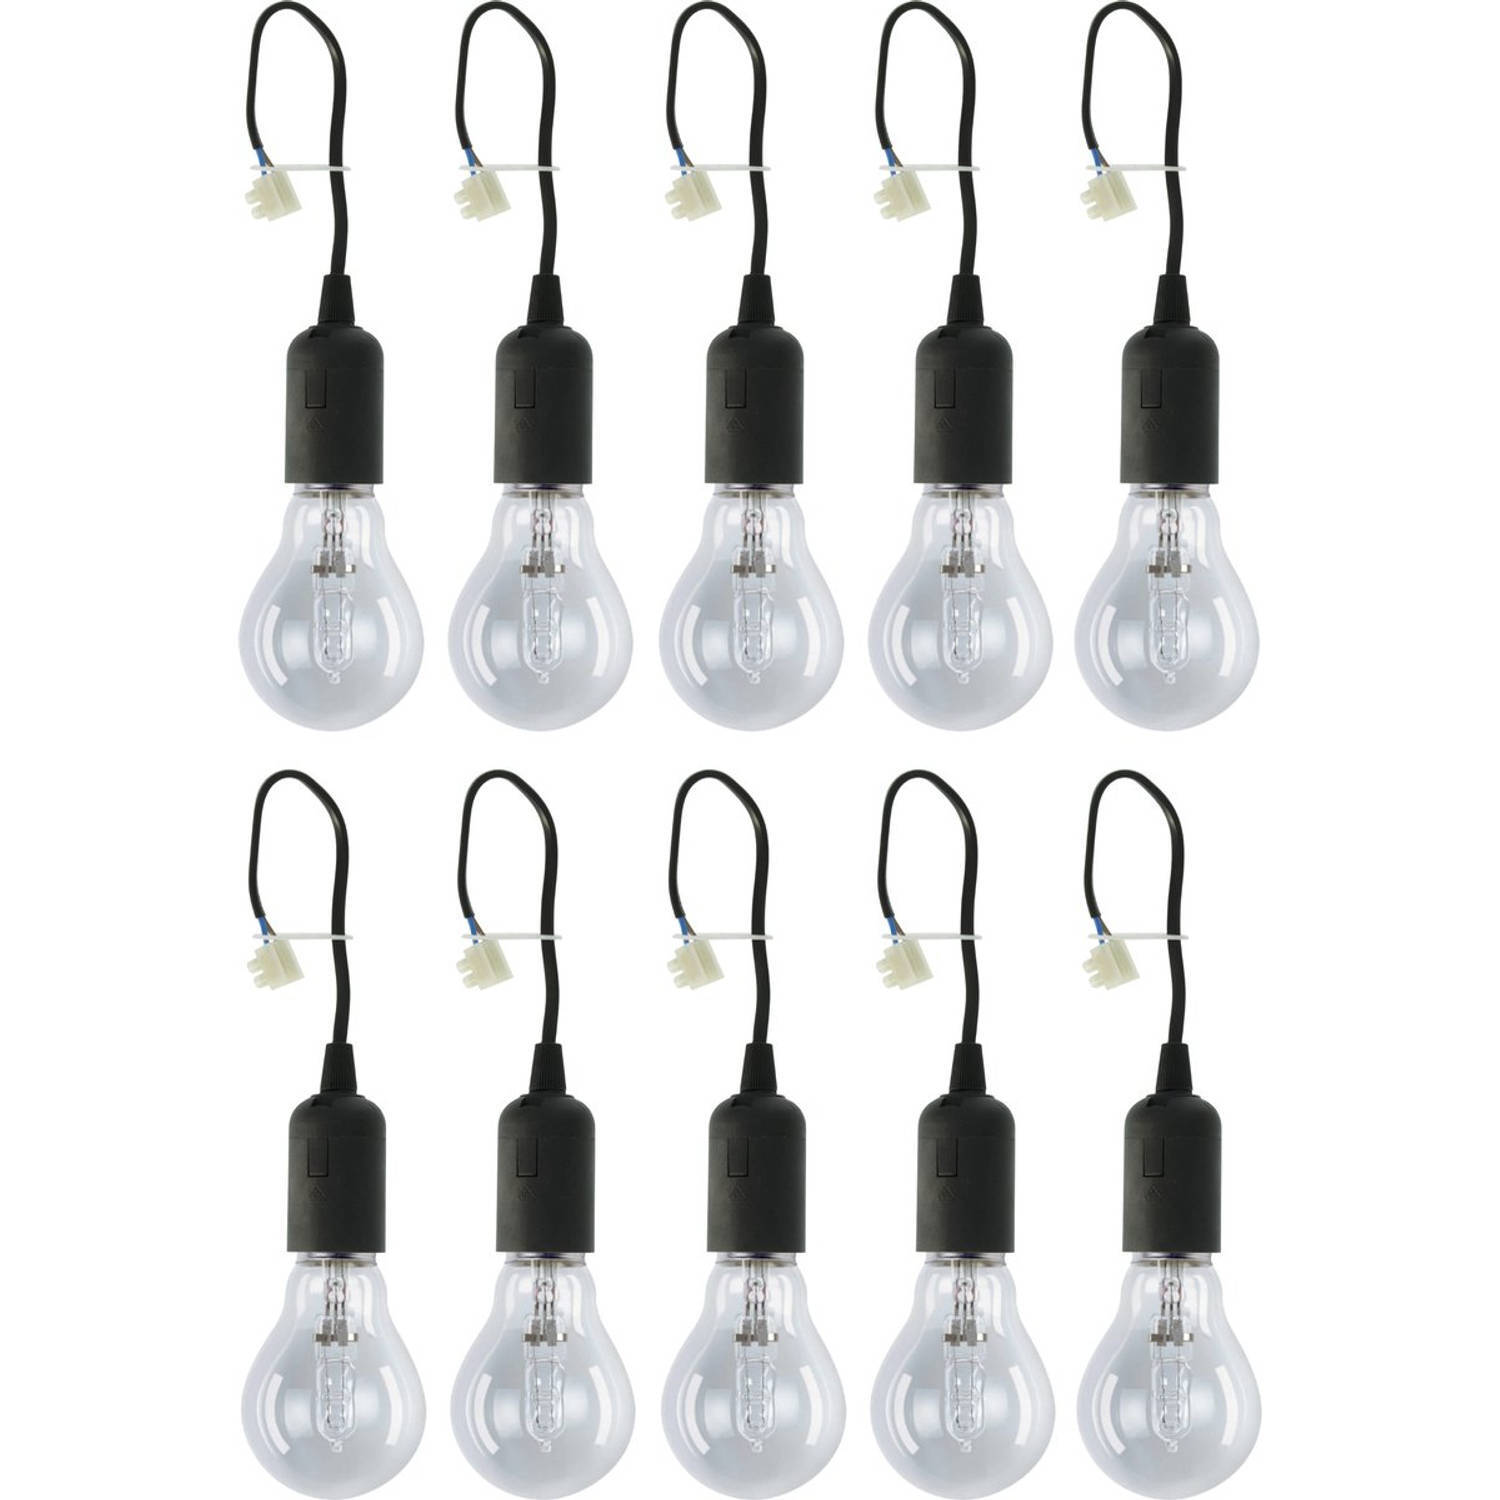 Proventa Verhuisfitting E27 met lamp - 10 stuks - Lampfitting Kroonsteen met lamp - 10 bouwfittingen